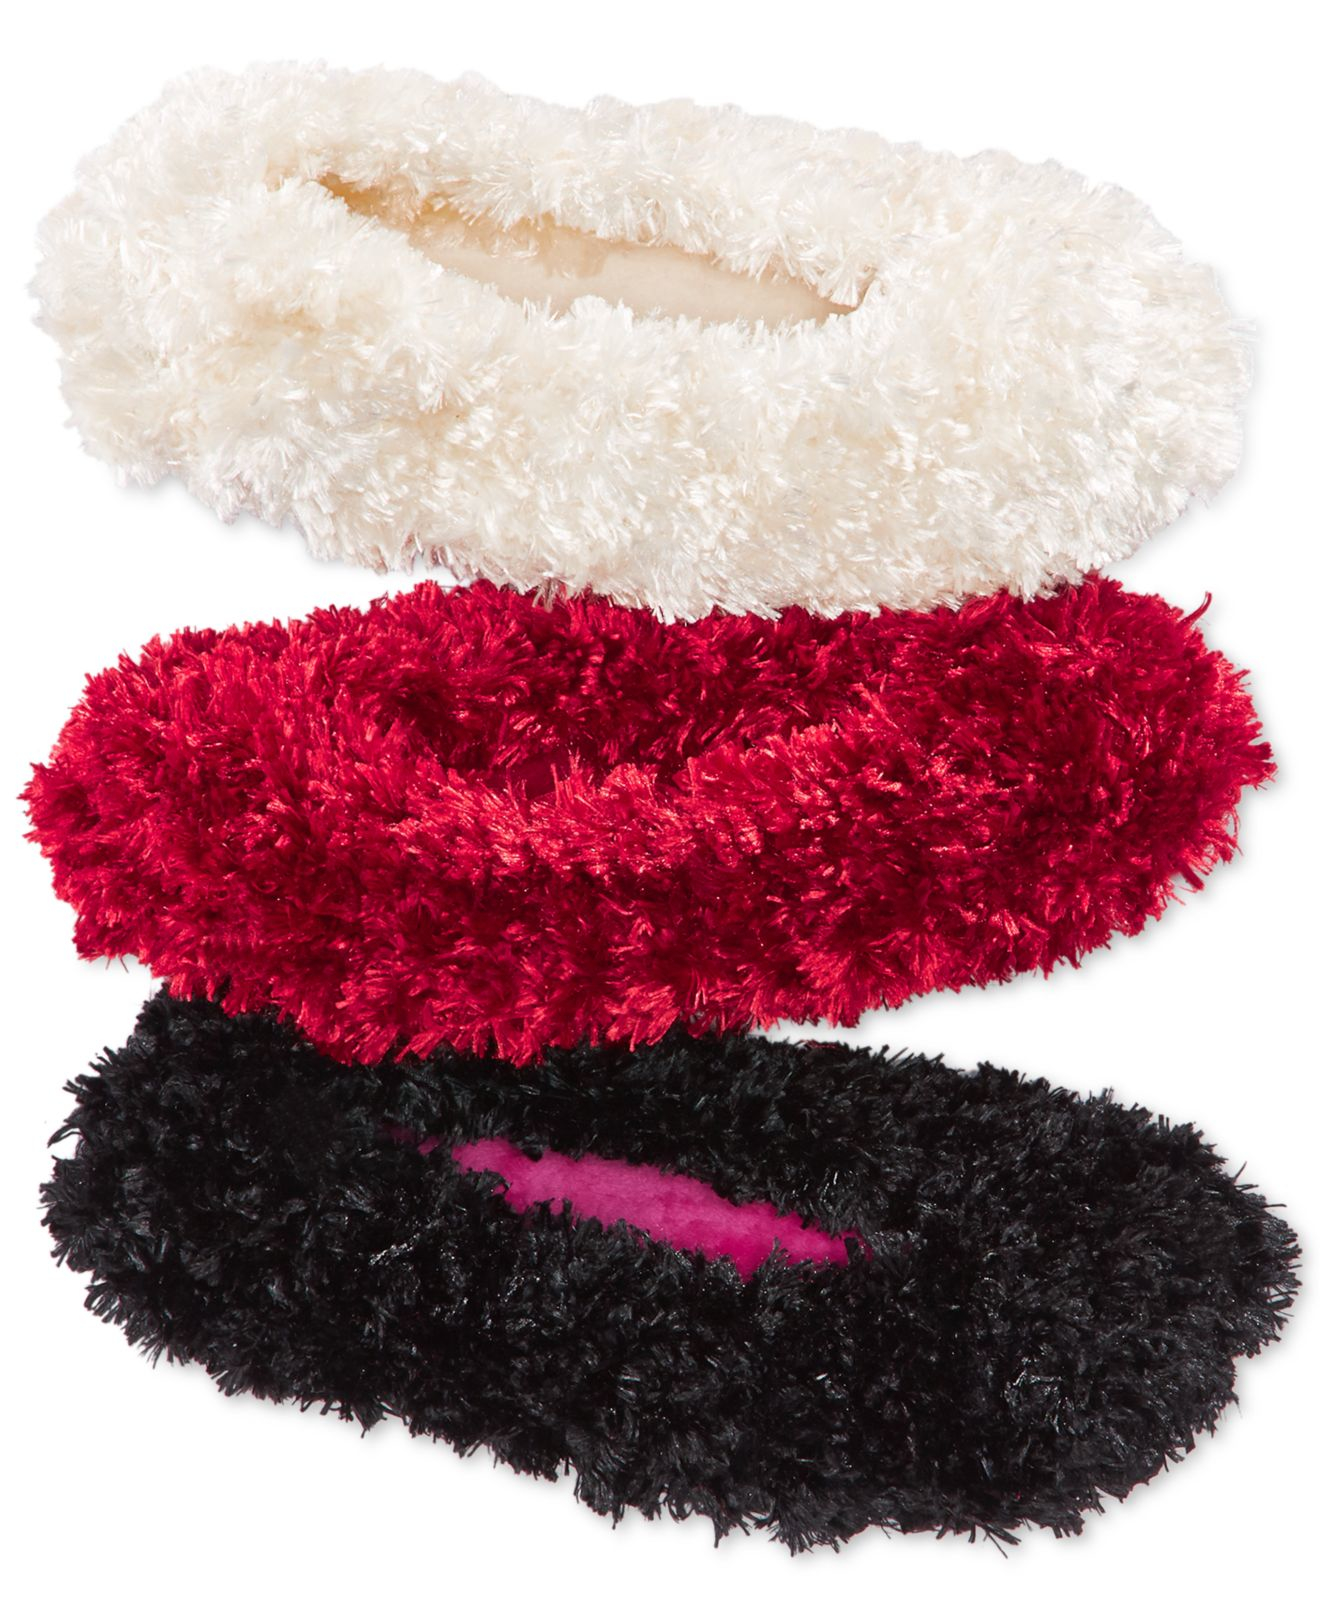 Hue Women's Feathery S Slipper Socks in Black (Red) - Lyst